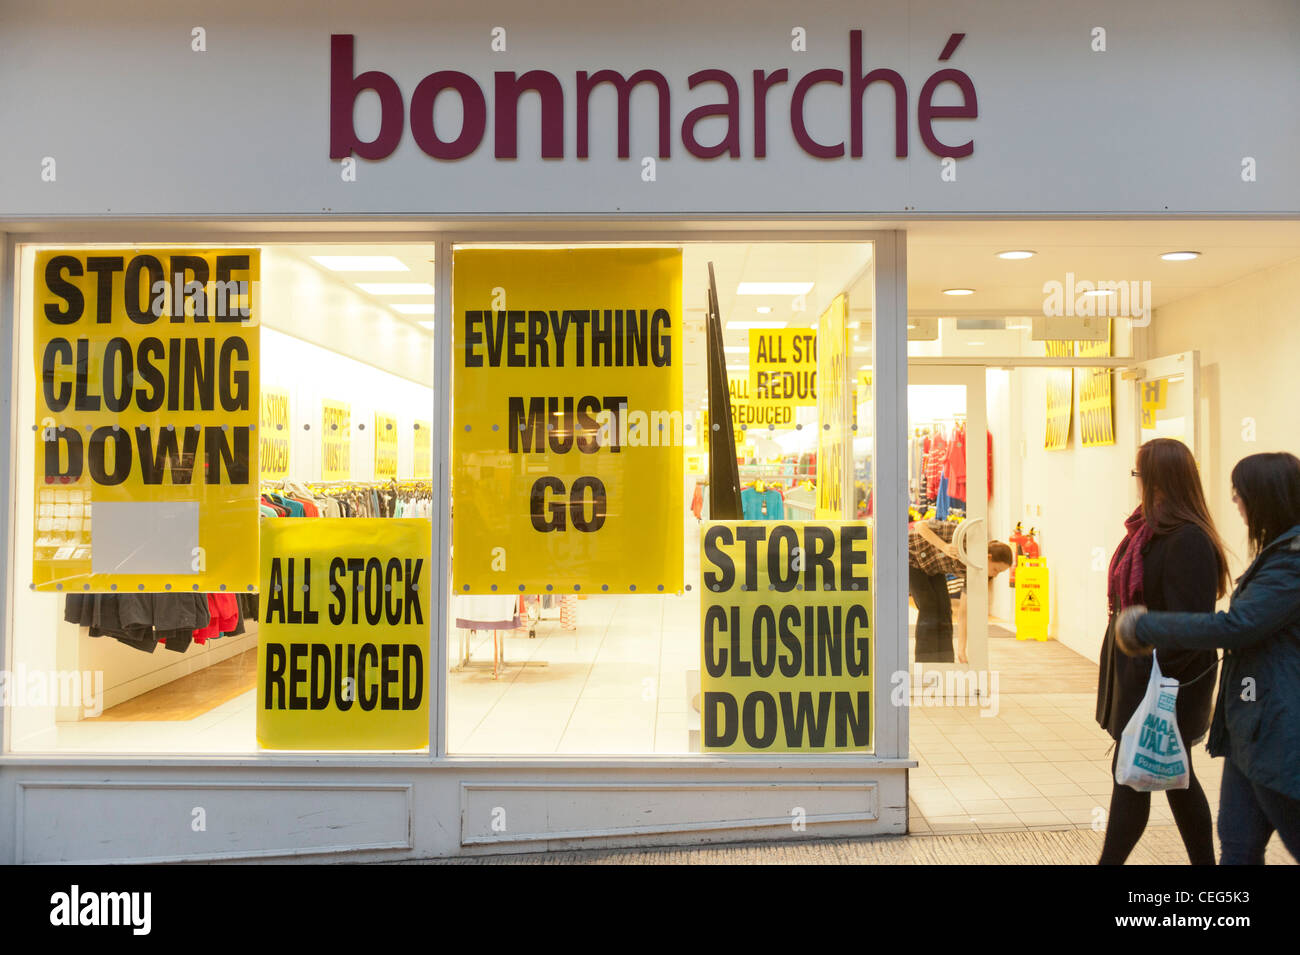 Bonmarché: What went wrong? - Retail Gazette